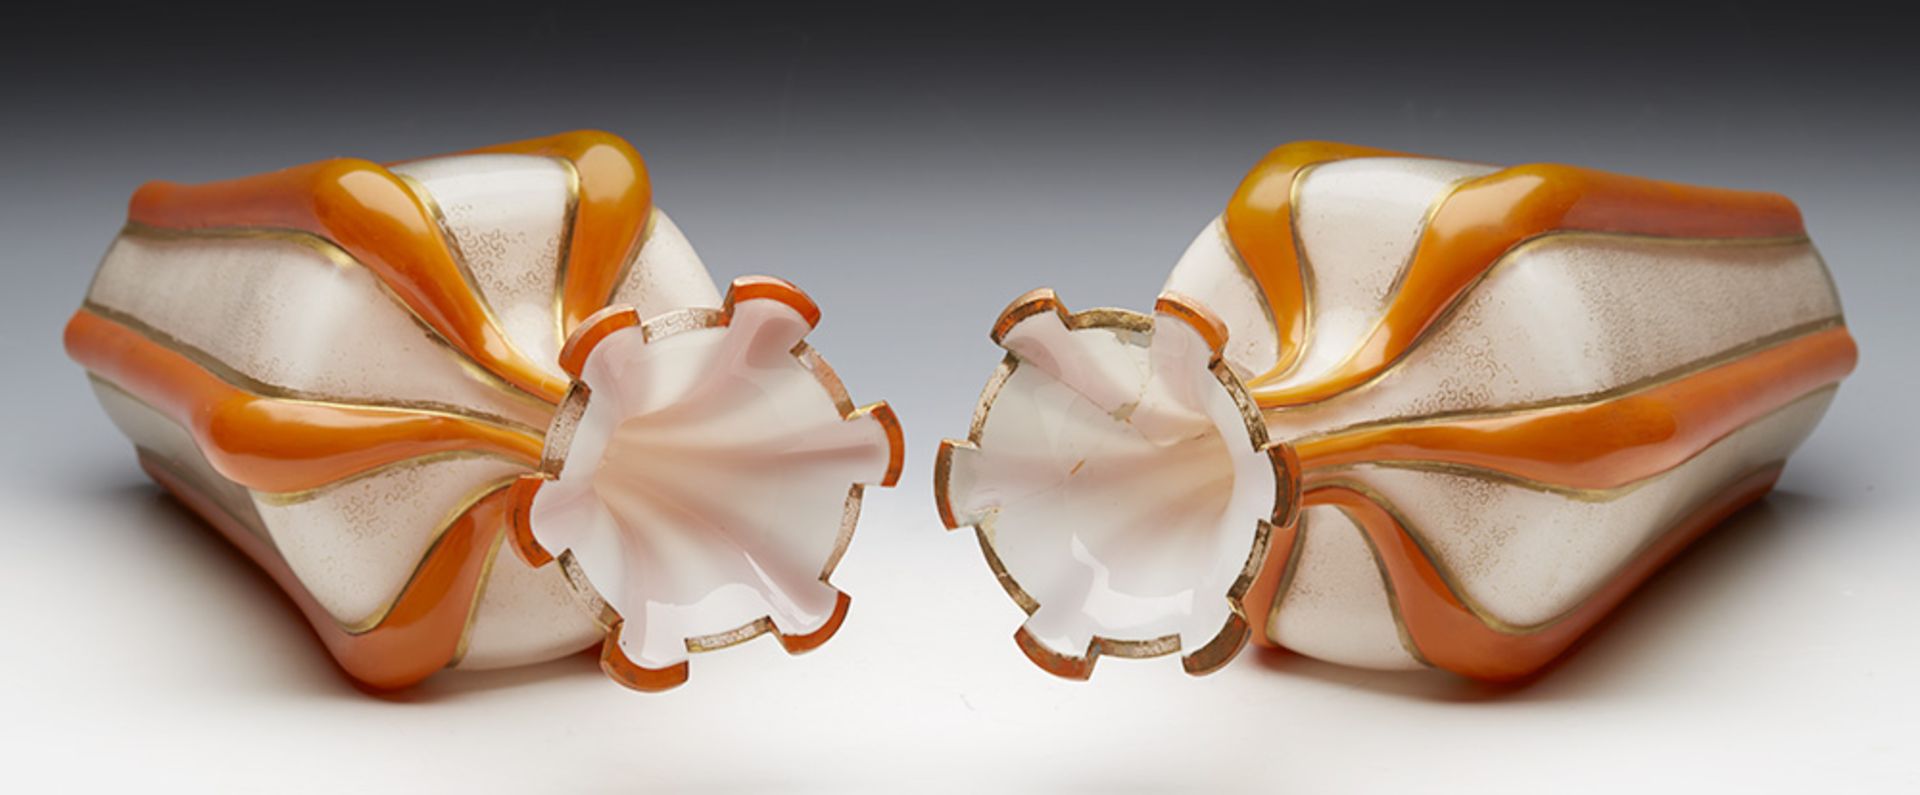 Antique Pair English/Bohemian Orange Vermicular Glass Vases C.1855 - Image 2 of 11